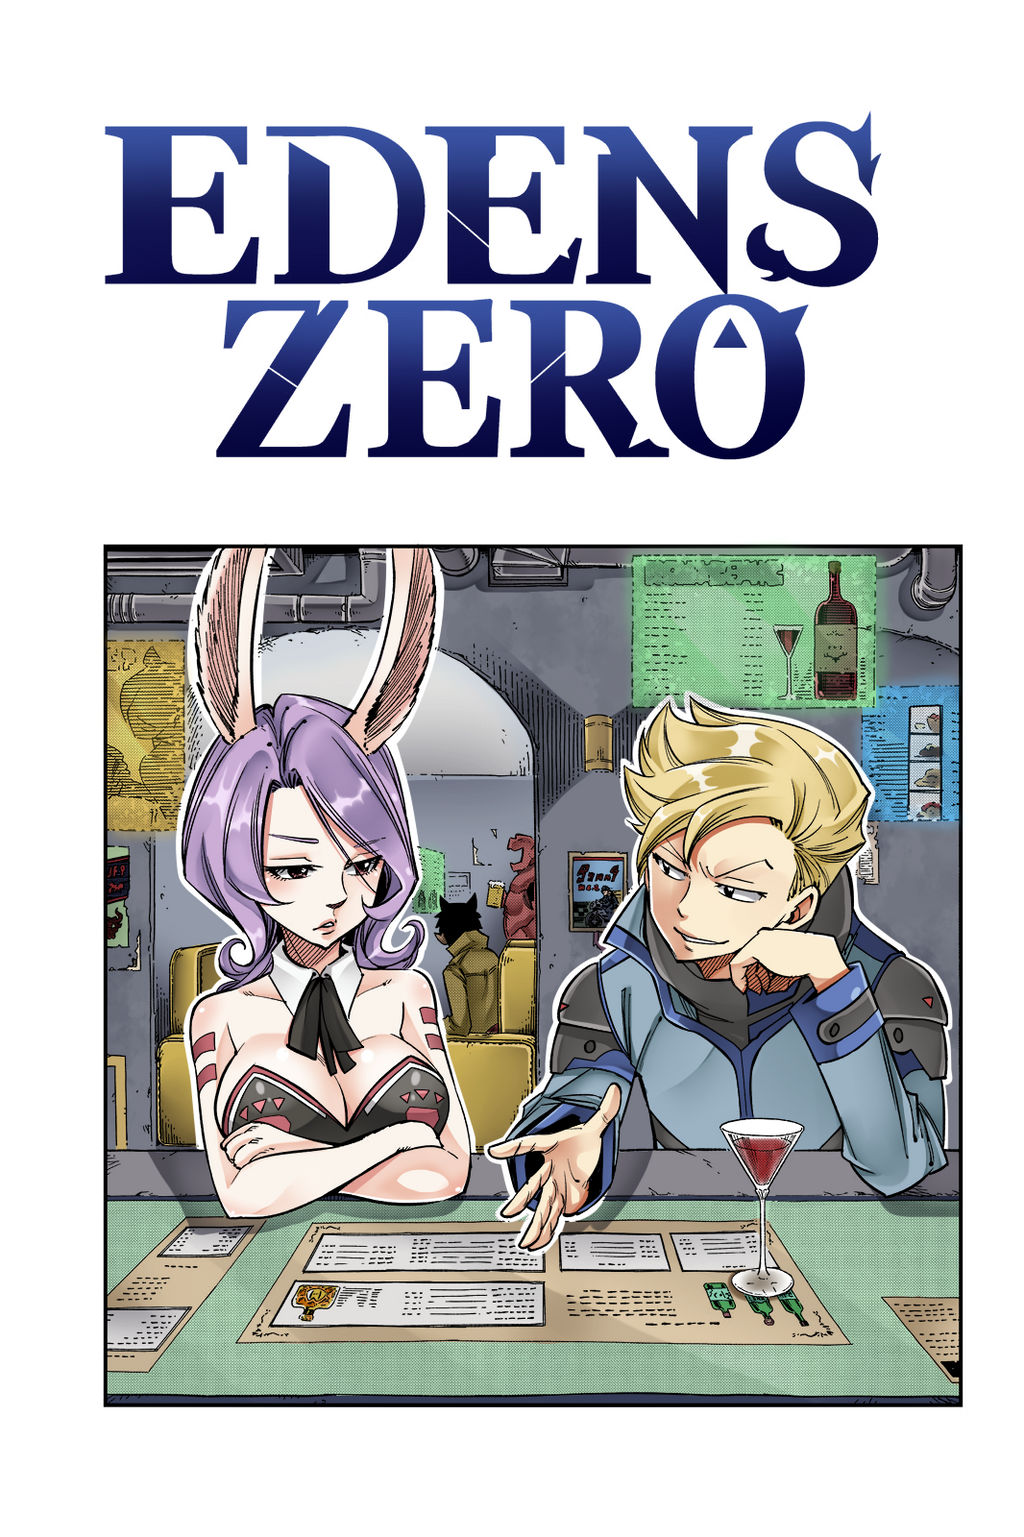 Manga Thrill on X: Edens Zero Season 2 Episode 12 Is Titled